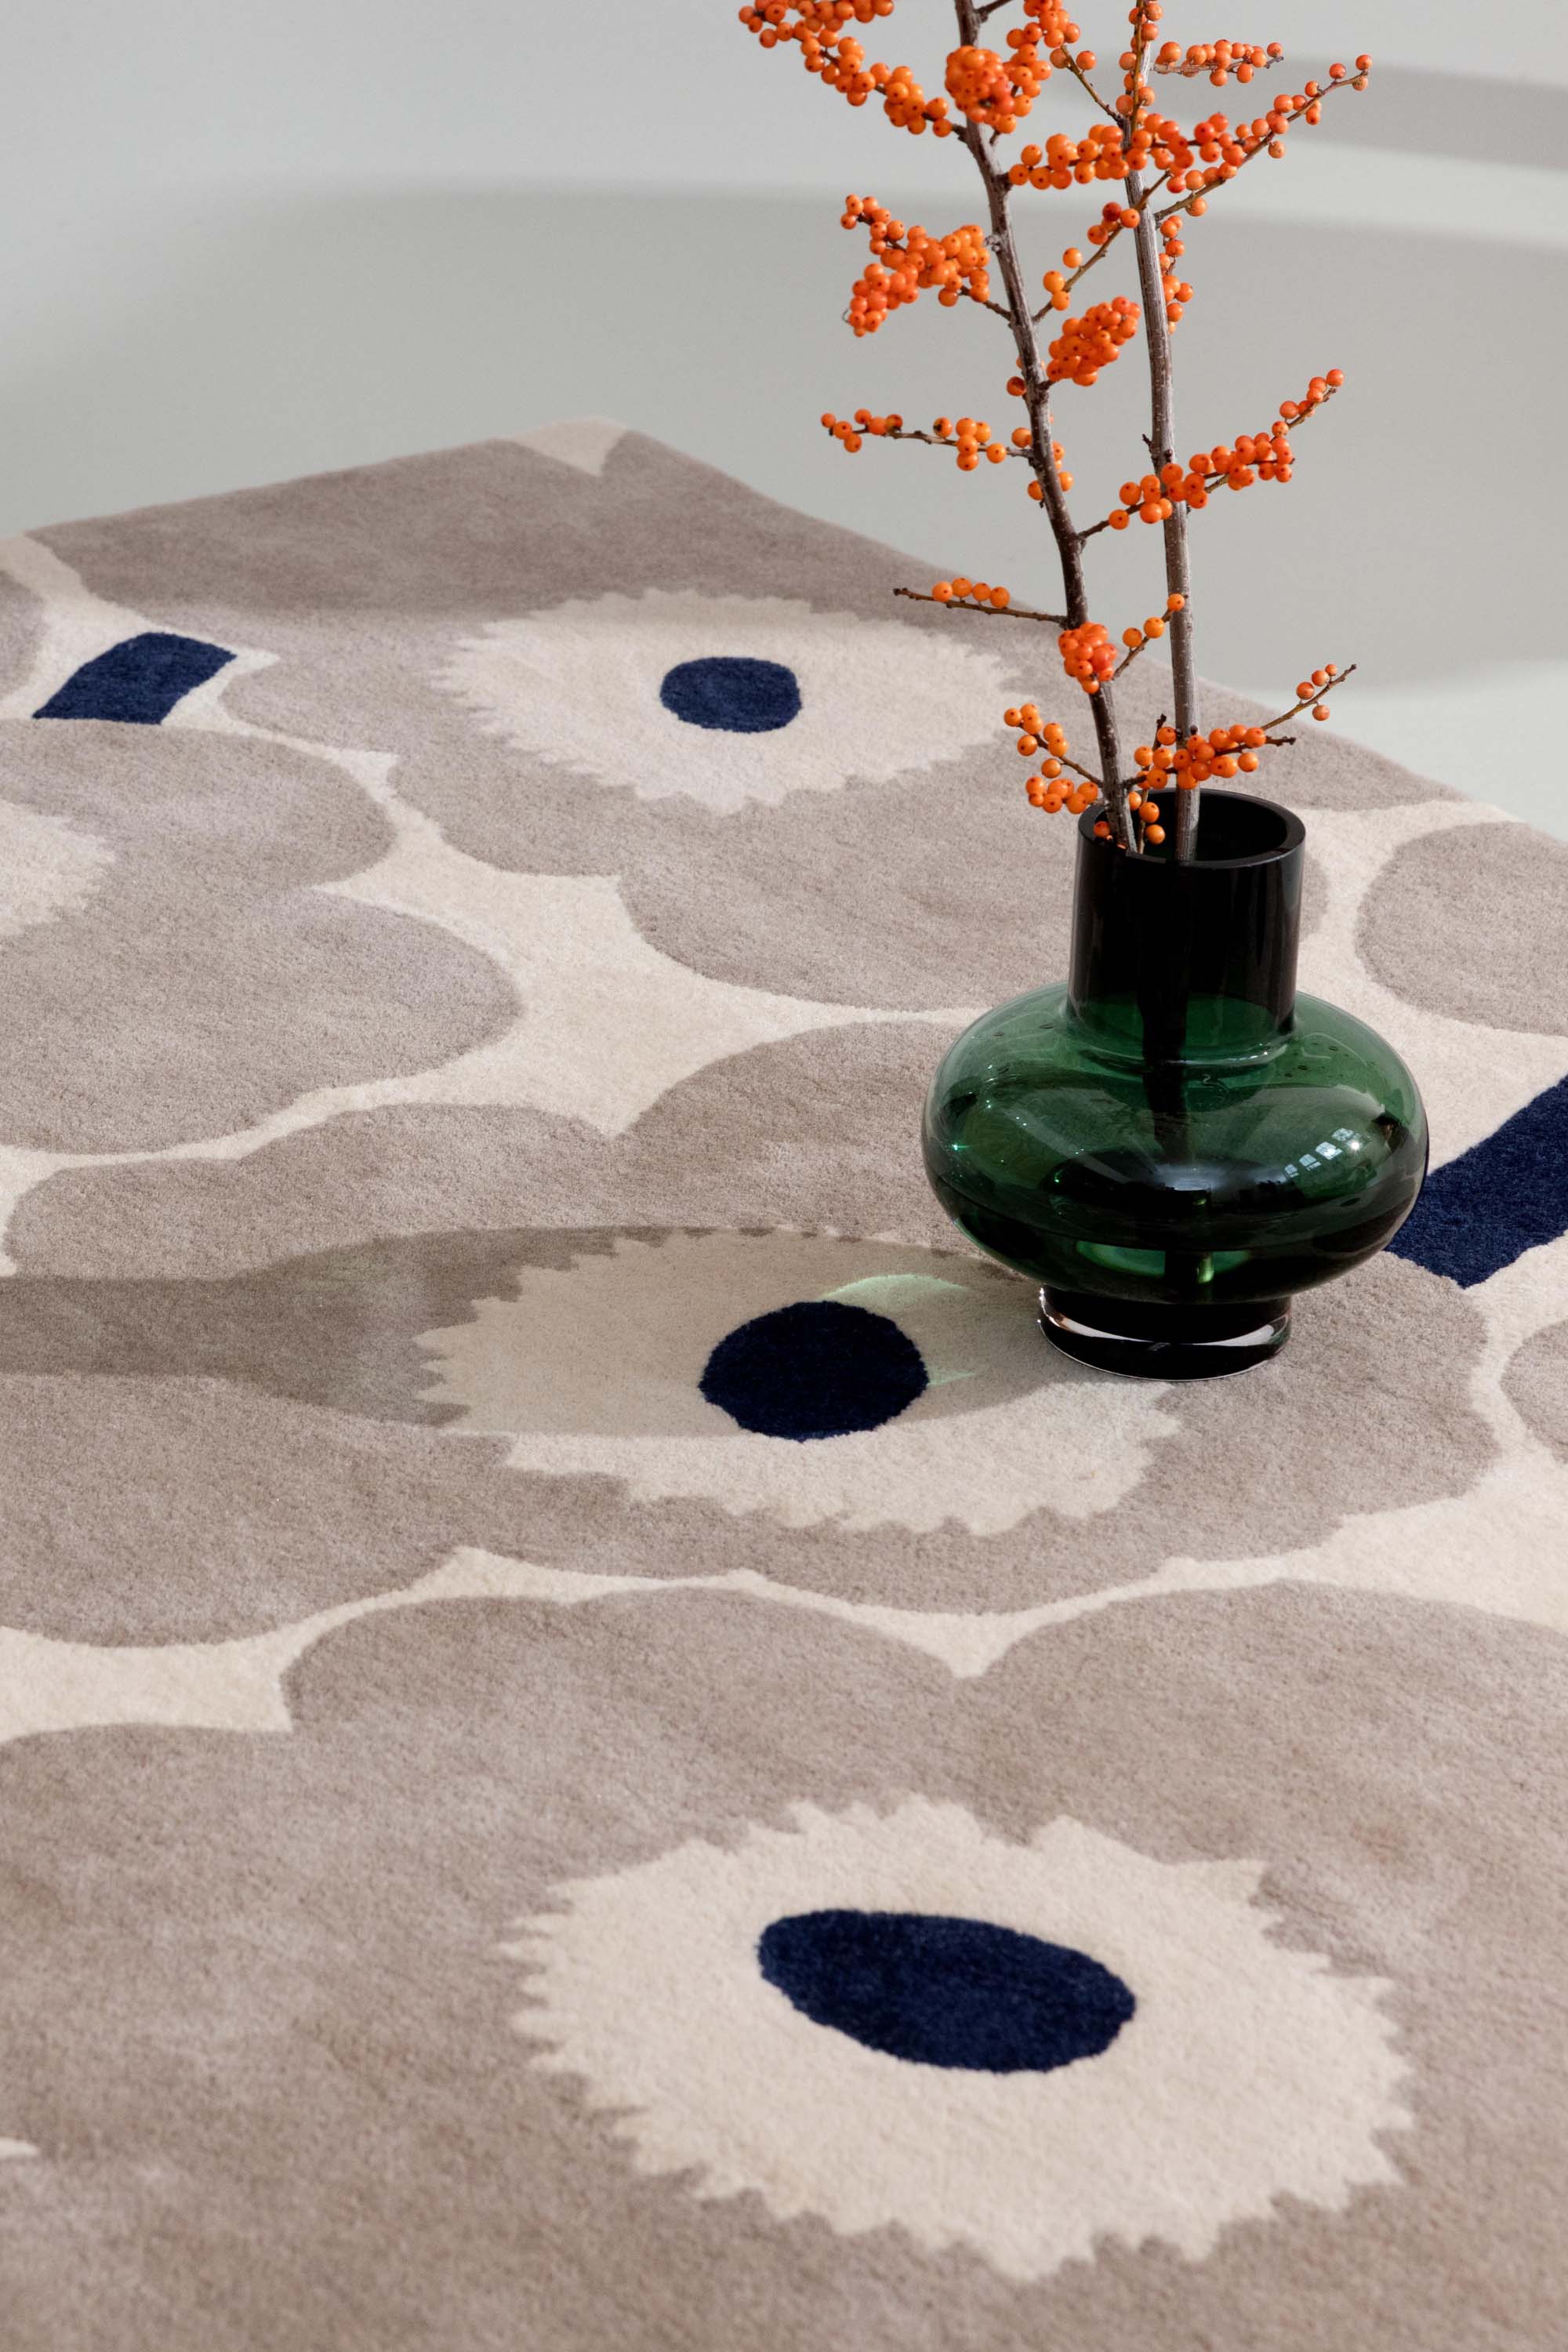 Grey patterned floral rug 